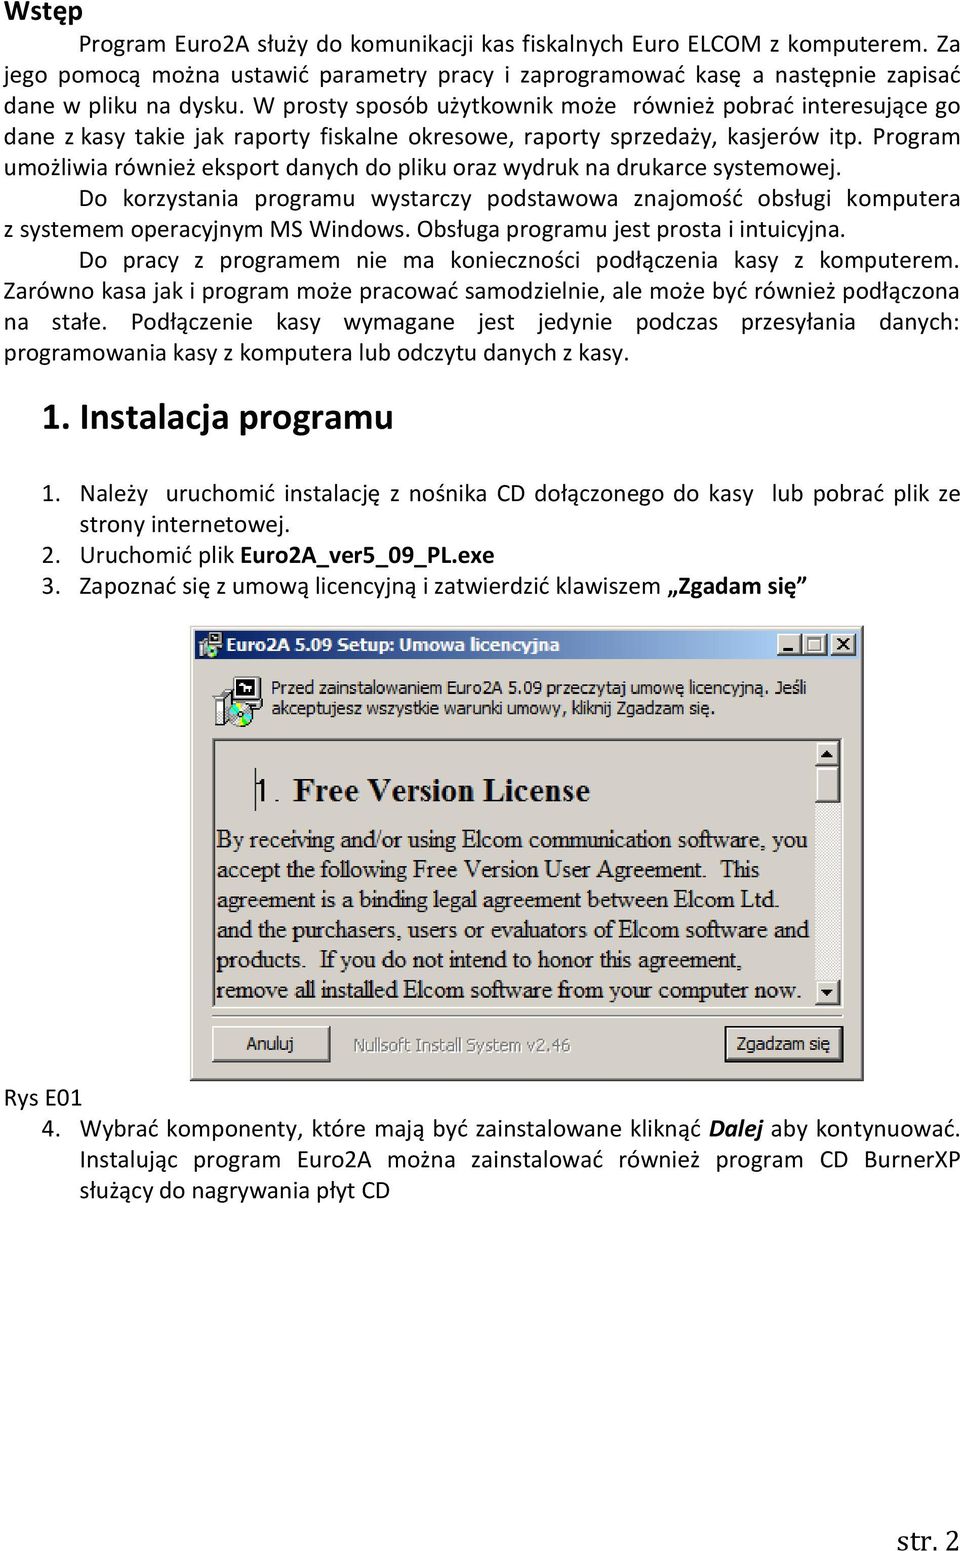 Program umożliwia również eksport danych do pliku oraz wydruk na drukarce systemowej. Do korzystania programu wystarczy podstawowa znajomość obsługi komputera z systemem operacyjnym MS Windows.